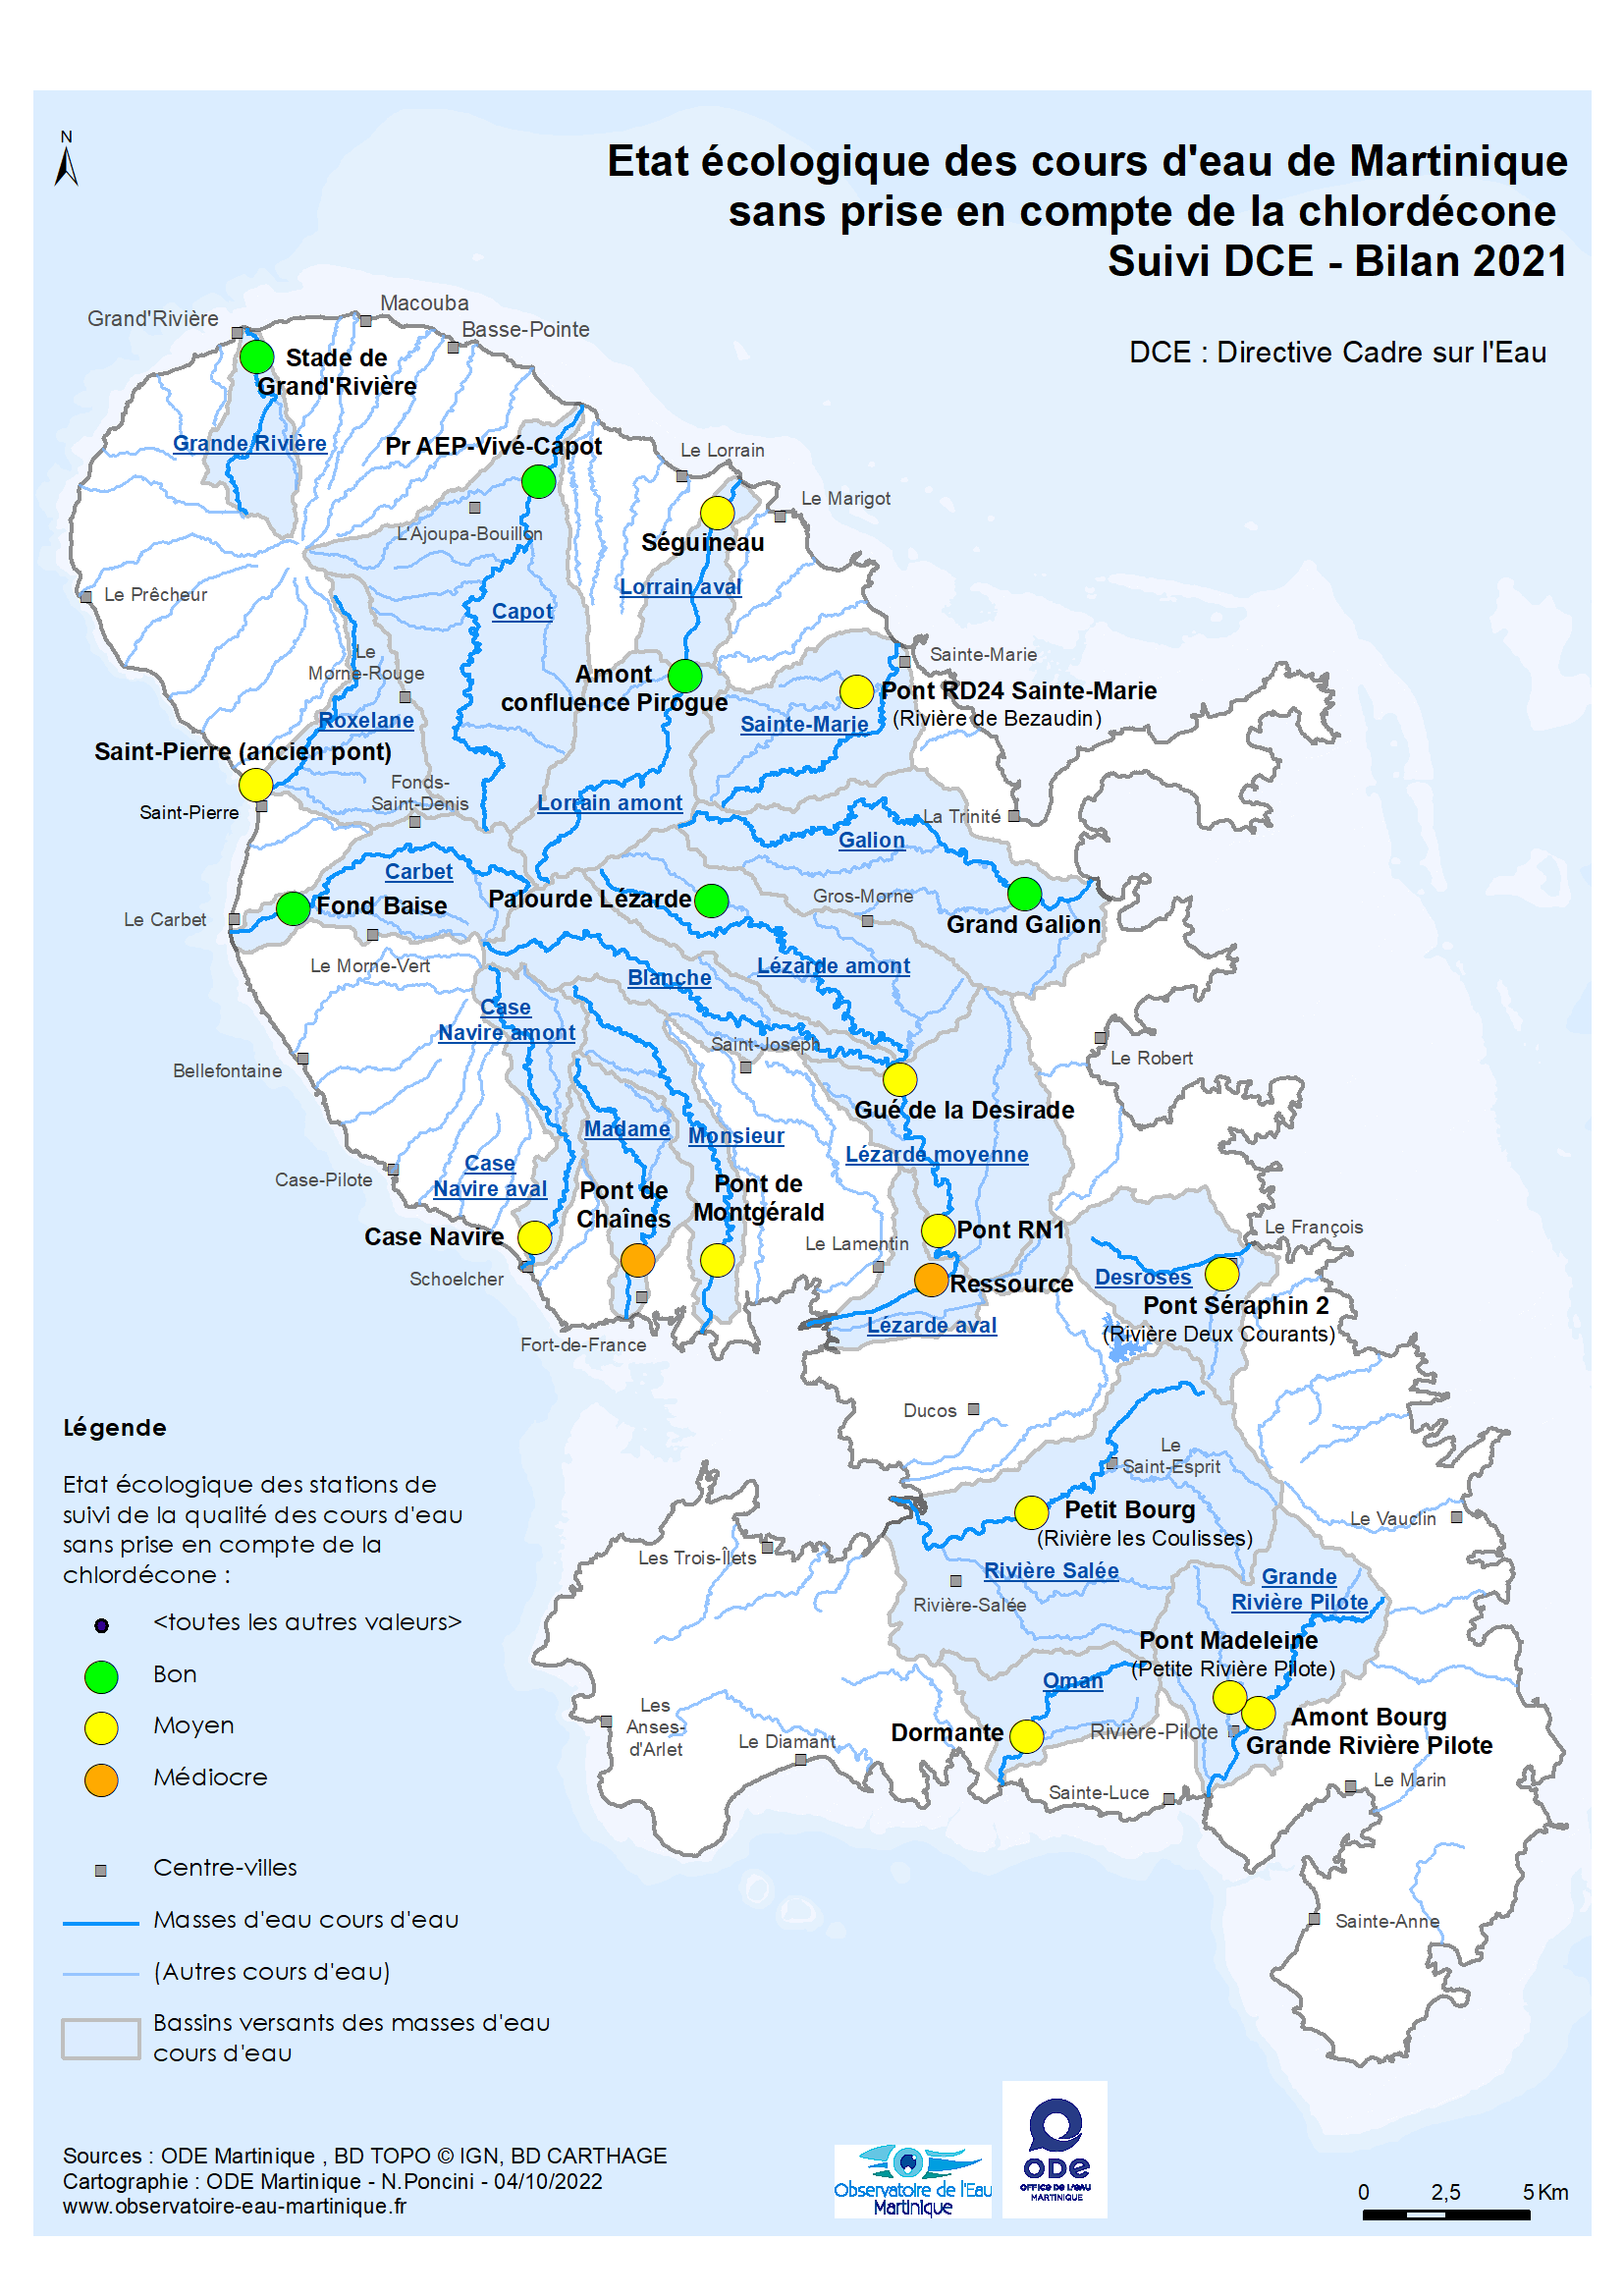 Etat écologique des cours d'eau de Martinique sans prise en compte de la chlordécone - Suivi DCE - Bilan 2019-2021